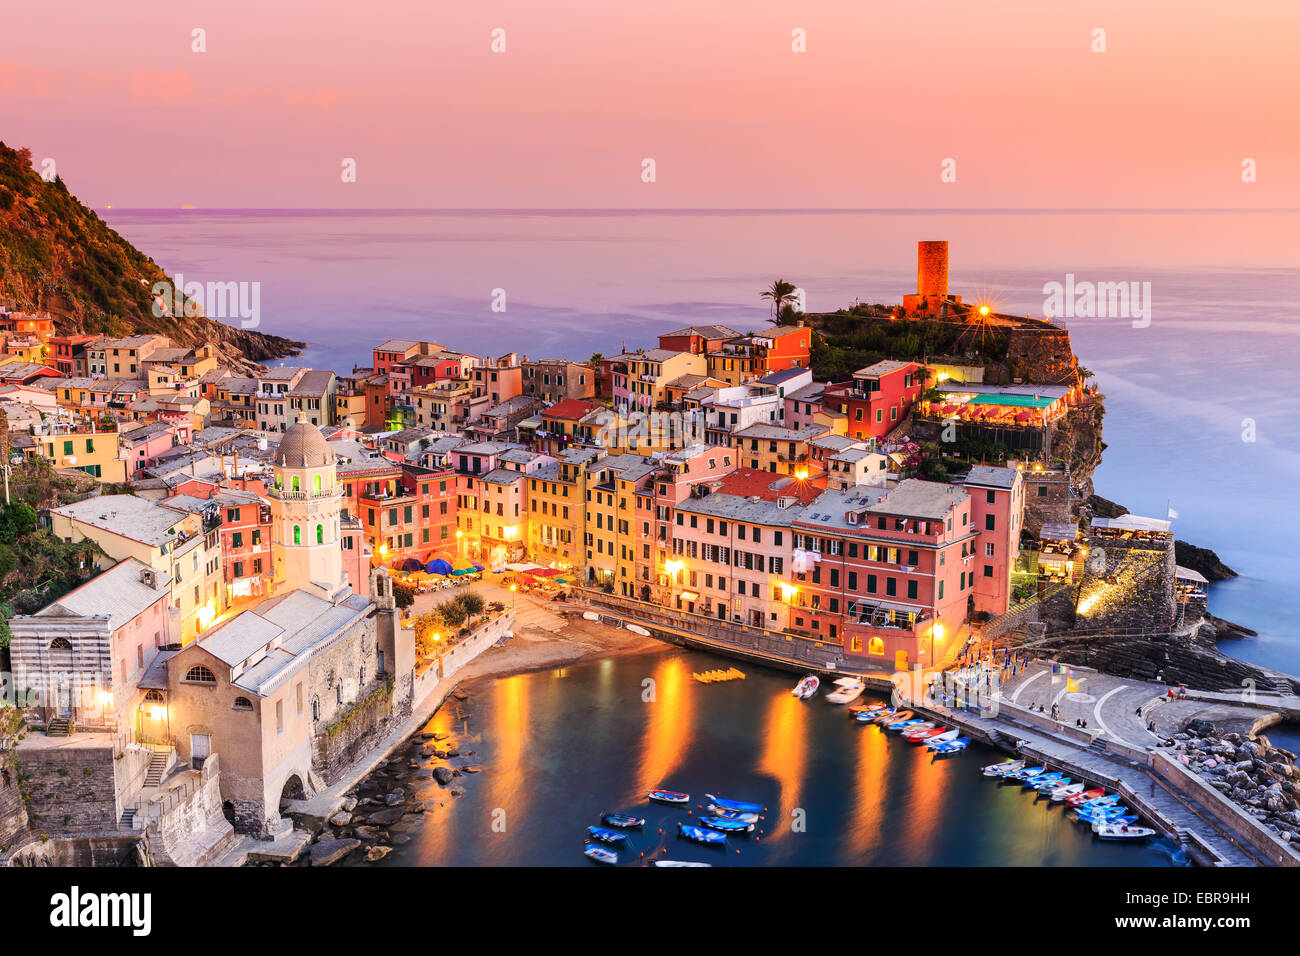 Cinque Terre, Liguria Italy. Stock Photo